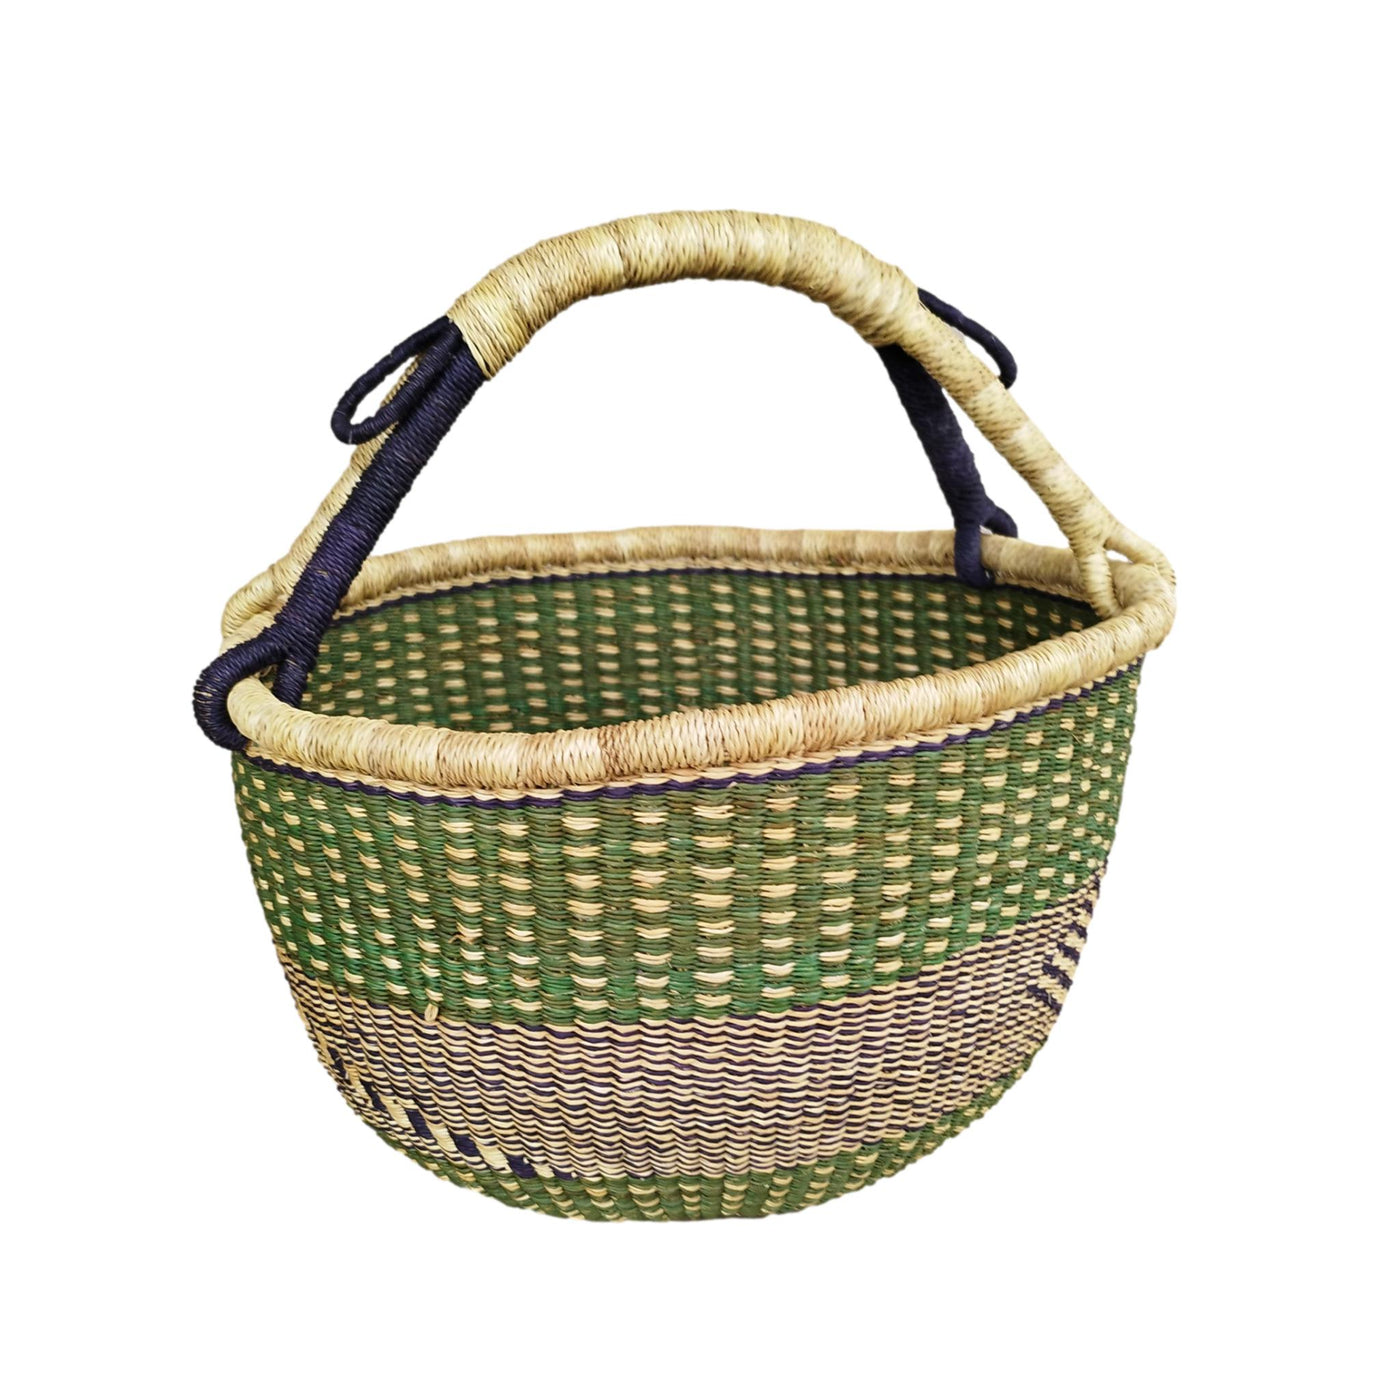 Market Basket | Storage basket | African basket | Bolga Market Basket | Woven basket | Straw bag | African market basket| handmade Basket